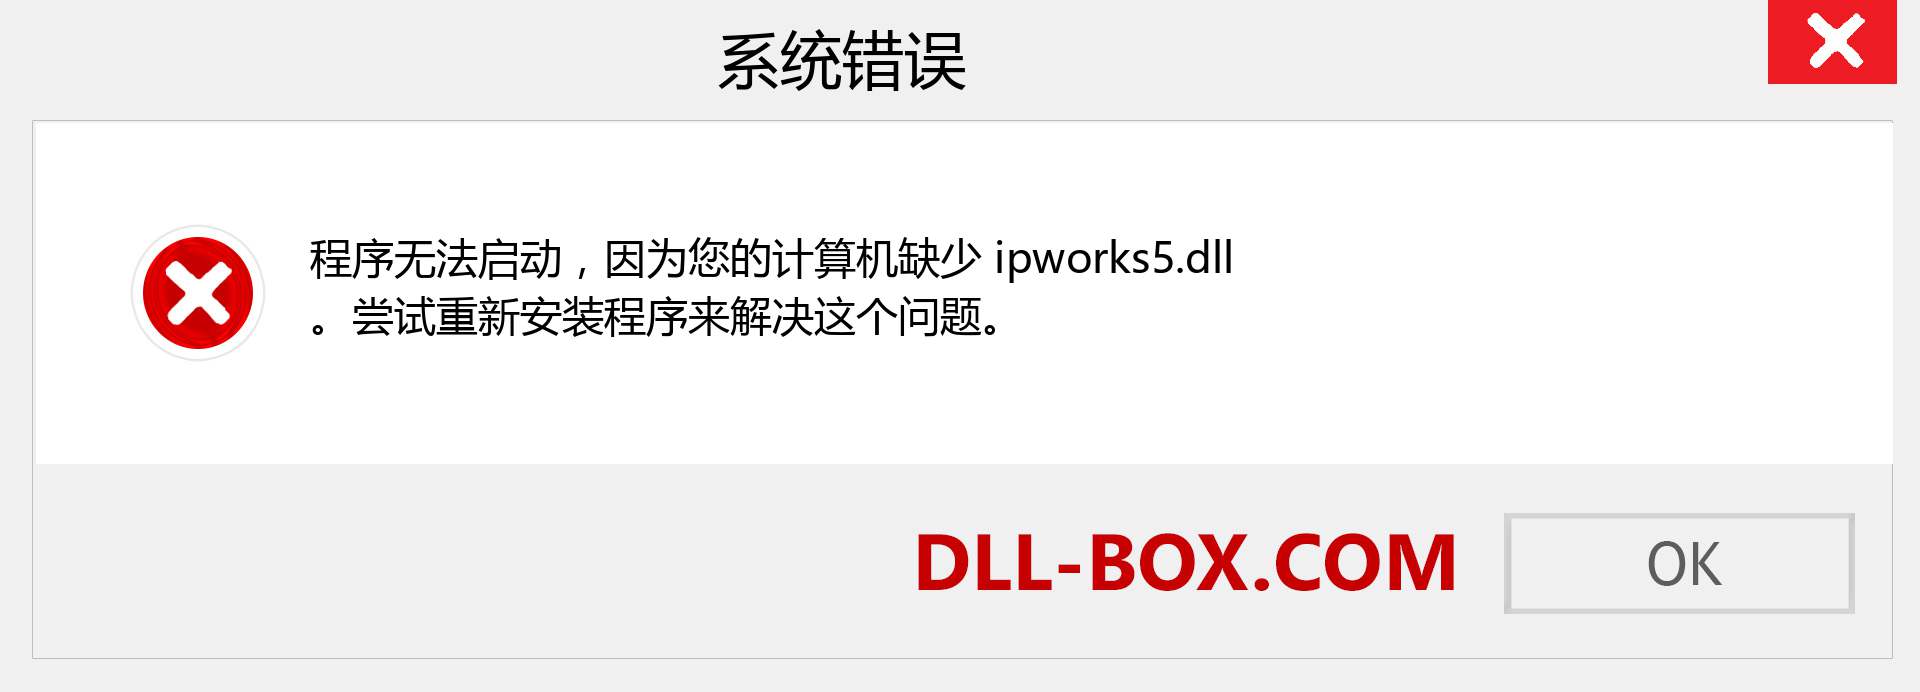 ipworks5.dll 文件丢失？。 适用于 Windows 7、8、10 的下载 - 修复 Windows、照片、图像上的 ipworks5 dll 丢失错误